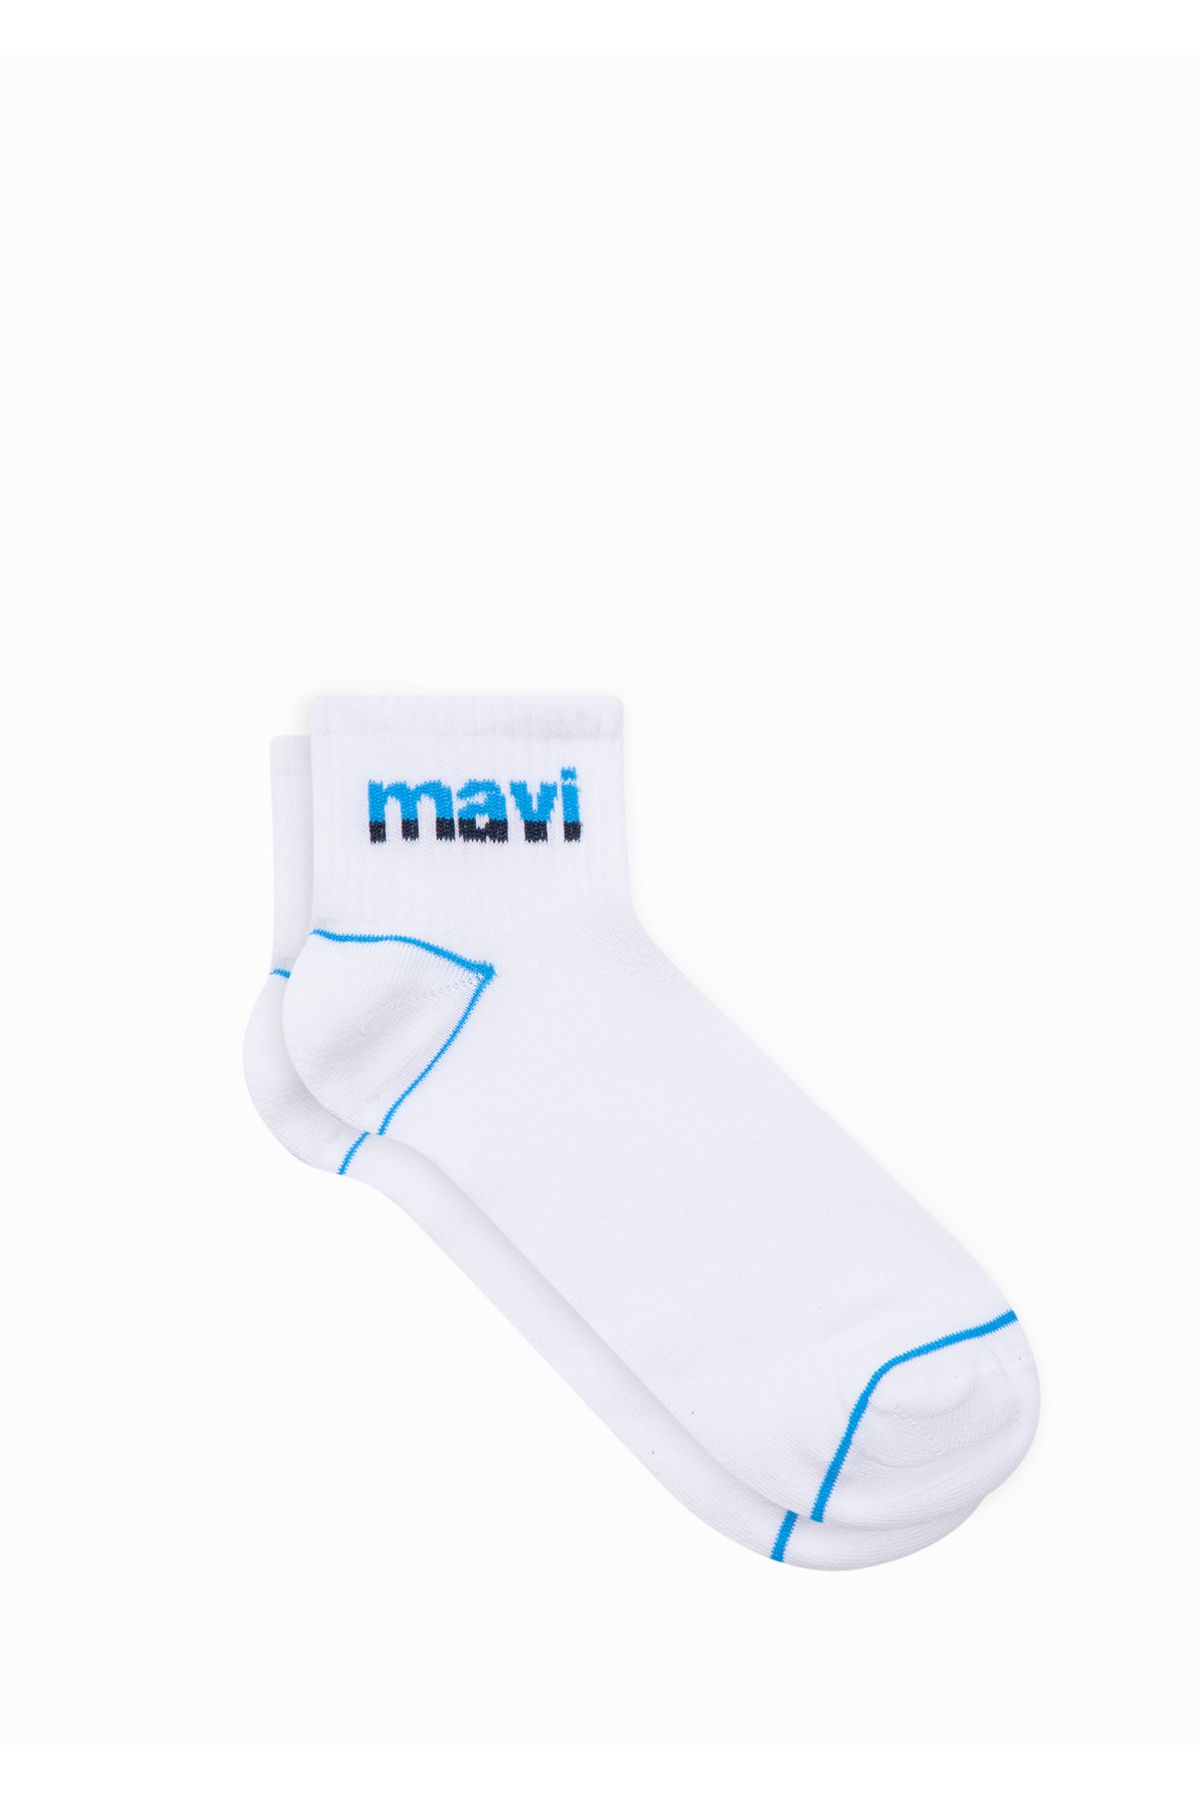 Mavi Logo Baskılı Beyaz Soket Çorap 092523-620